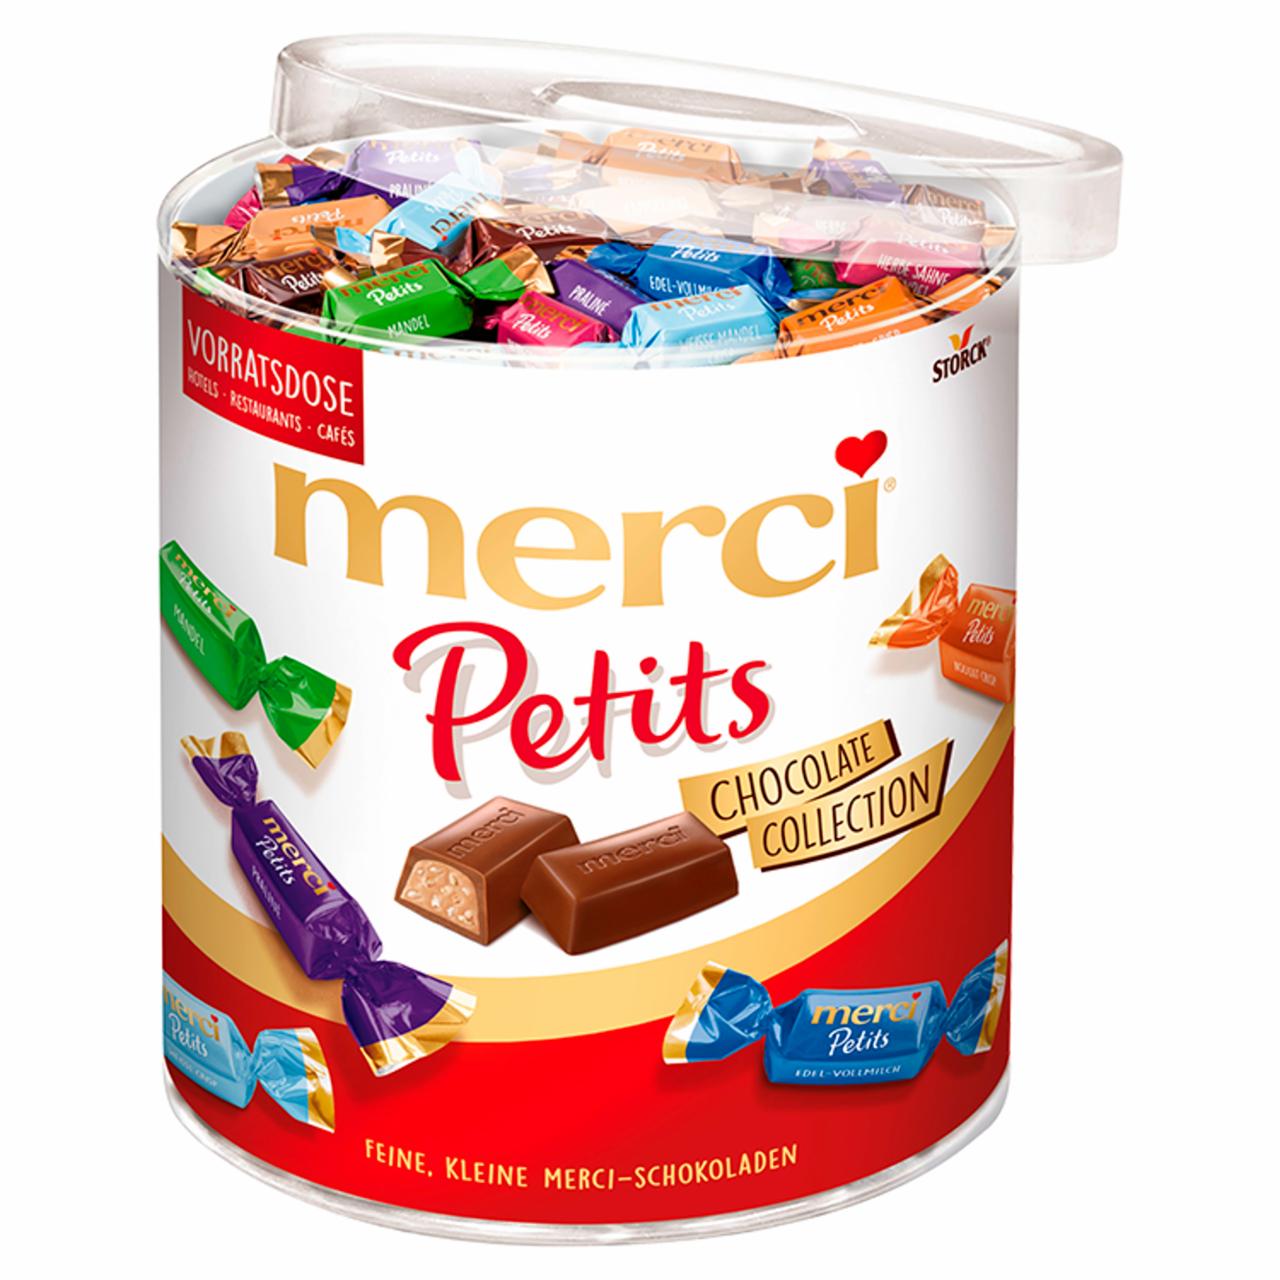 Képek - Merci Petits 7 csokoládékülönlegesség 1000 g